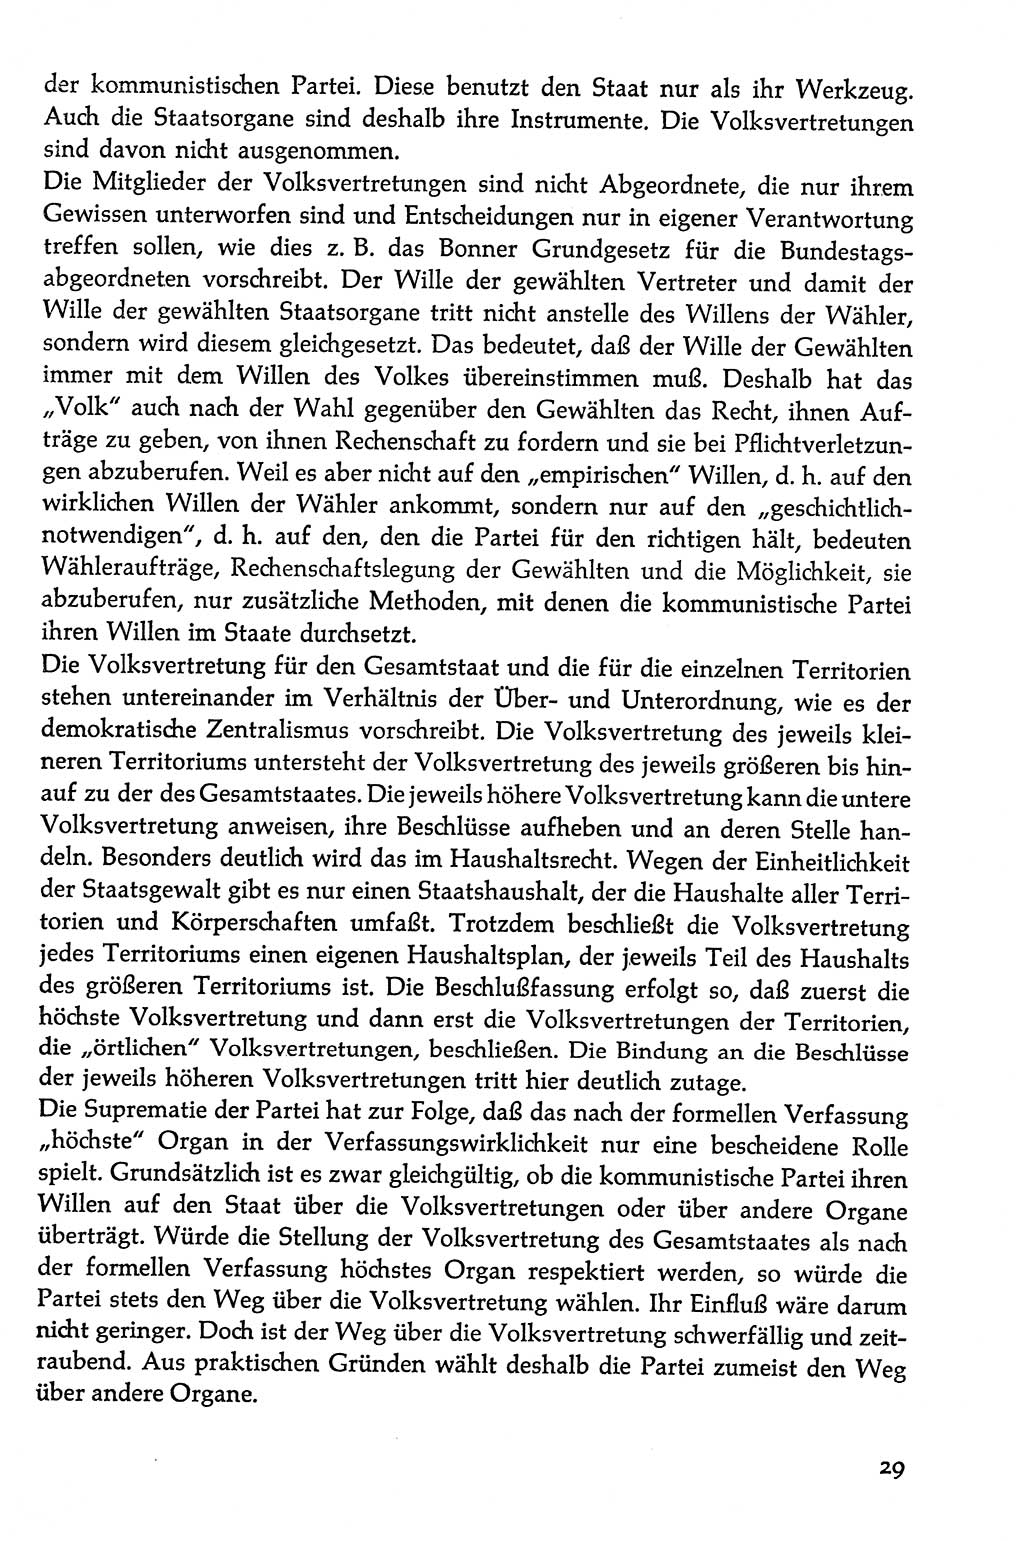 Volksdemokratische Ordnung in Mitteldeutschland [Deutsche Demokratische Republik (DDR)], Texte zur verfassungsrechtlichen Situation 1963, Seite 29 (Volksdem. Ordn. Md. DDR 1963, S. 29)